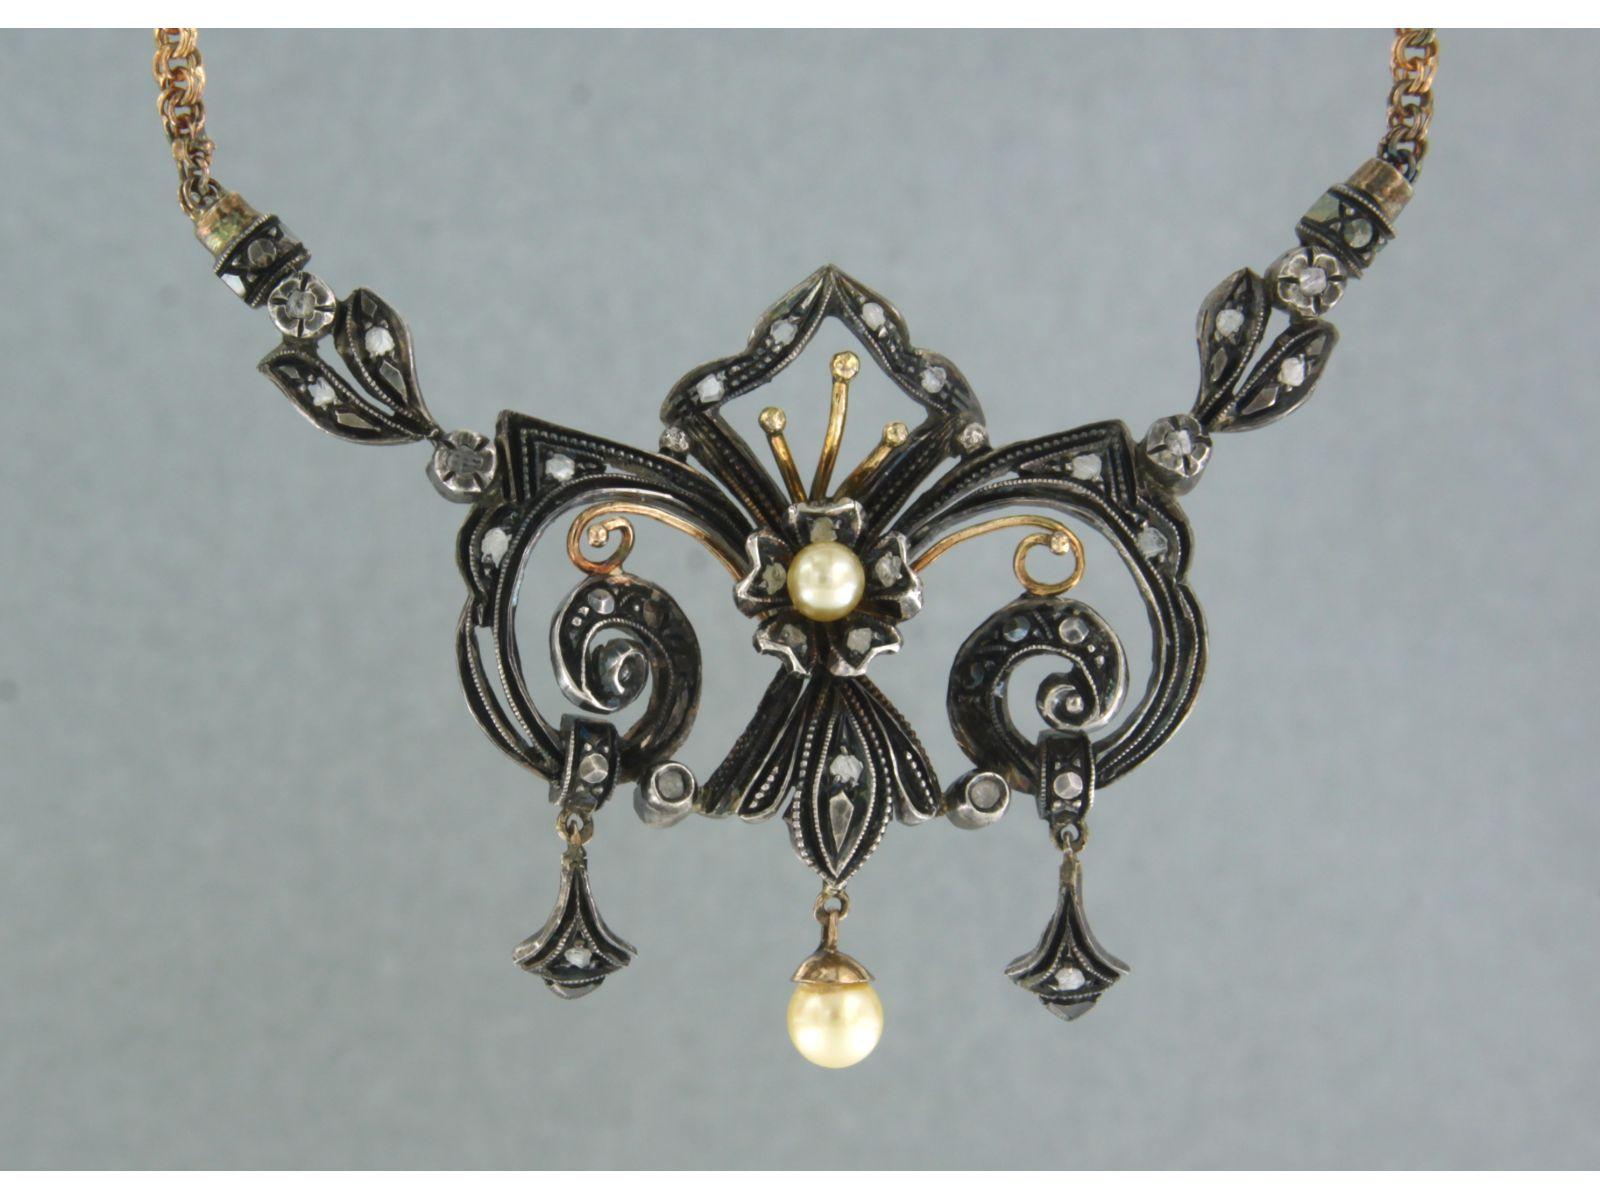 Halskette aus 18 Karat Gelbgold mit einem Mittelstück aus Gold und Silber, besetzt mit Perlen und rosa Diamanten - 40 cm lang

detaillierte Beschreibung:

die Länge der Kette ist 40 cm lang und 2,1 mm breit

die Größe des Mittelstücks ist 3,6 cm